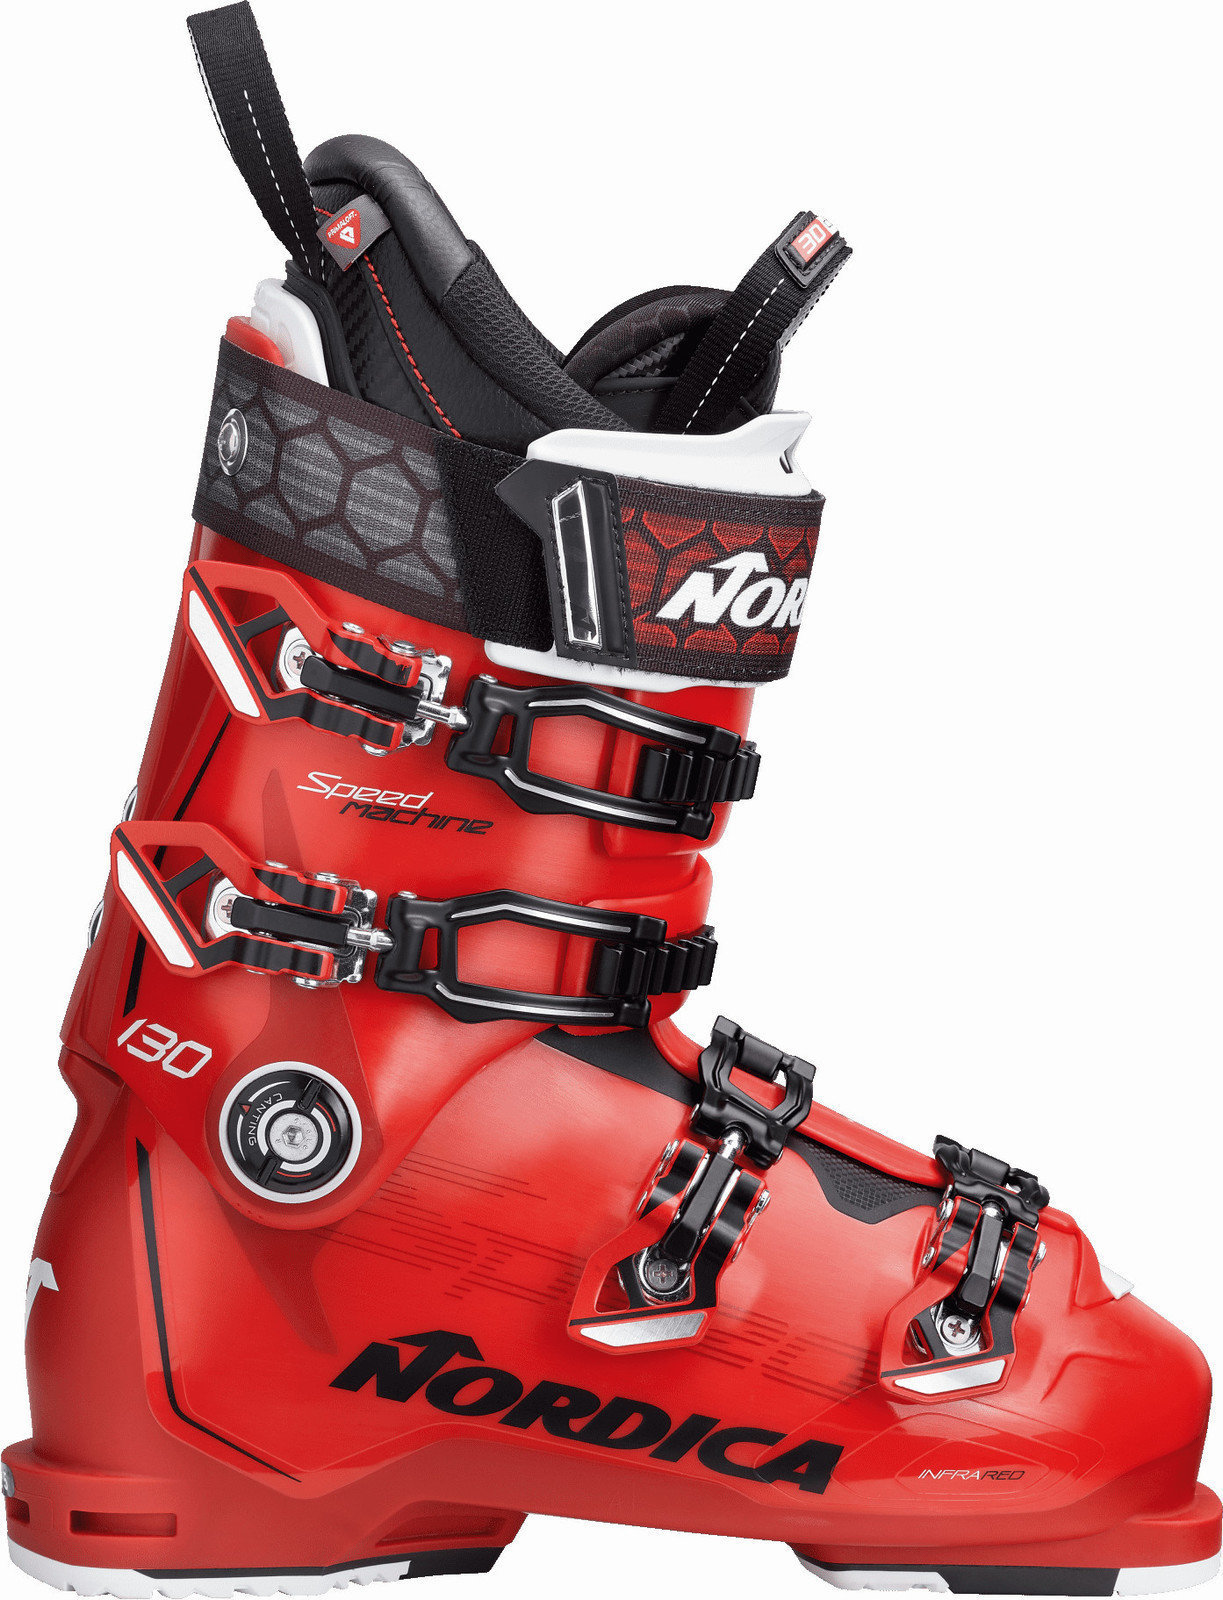 Zjazdové lyžiarky Nordica Speedmachine 130 Red-Black-White 29 18/19